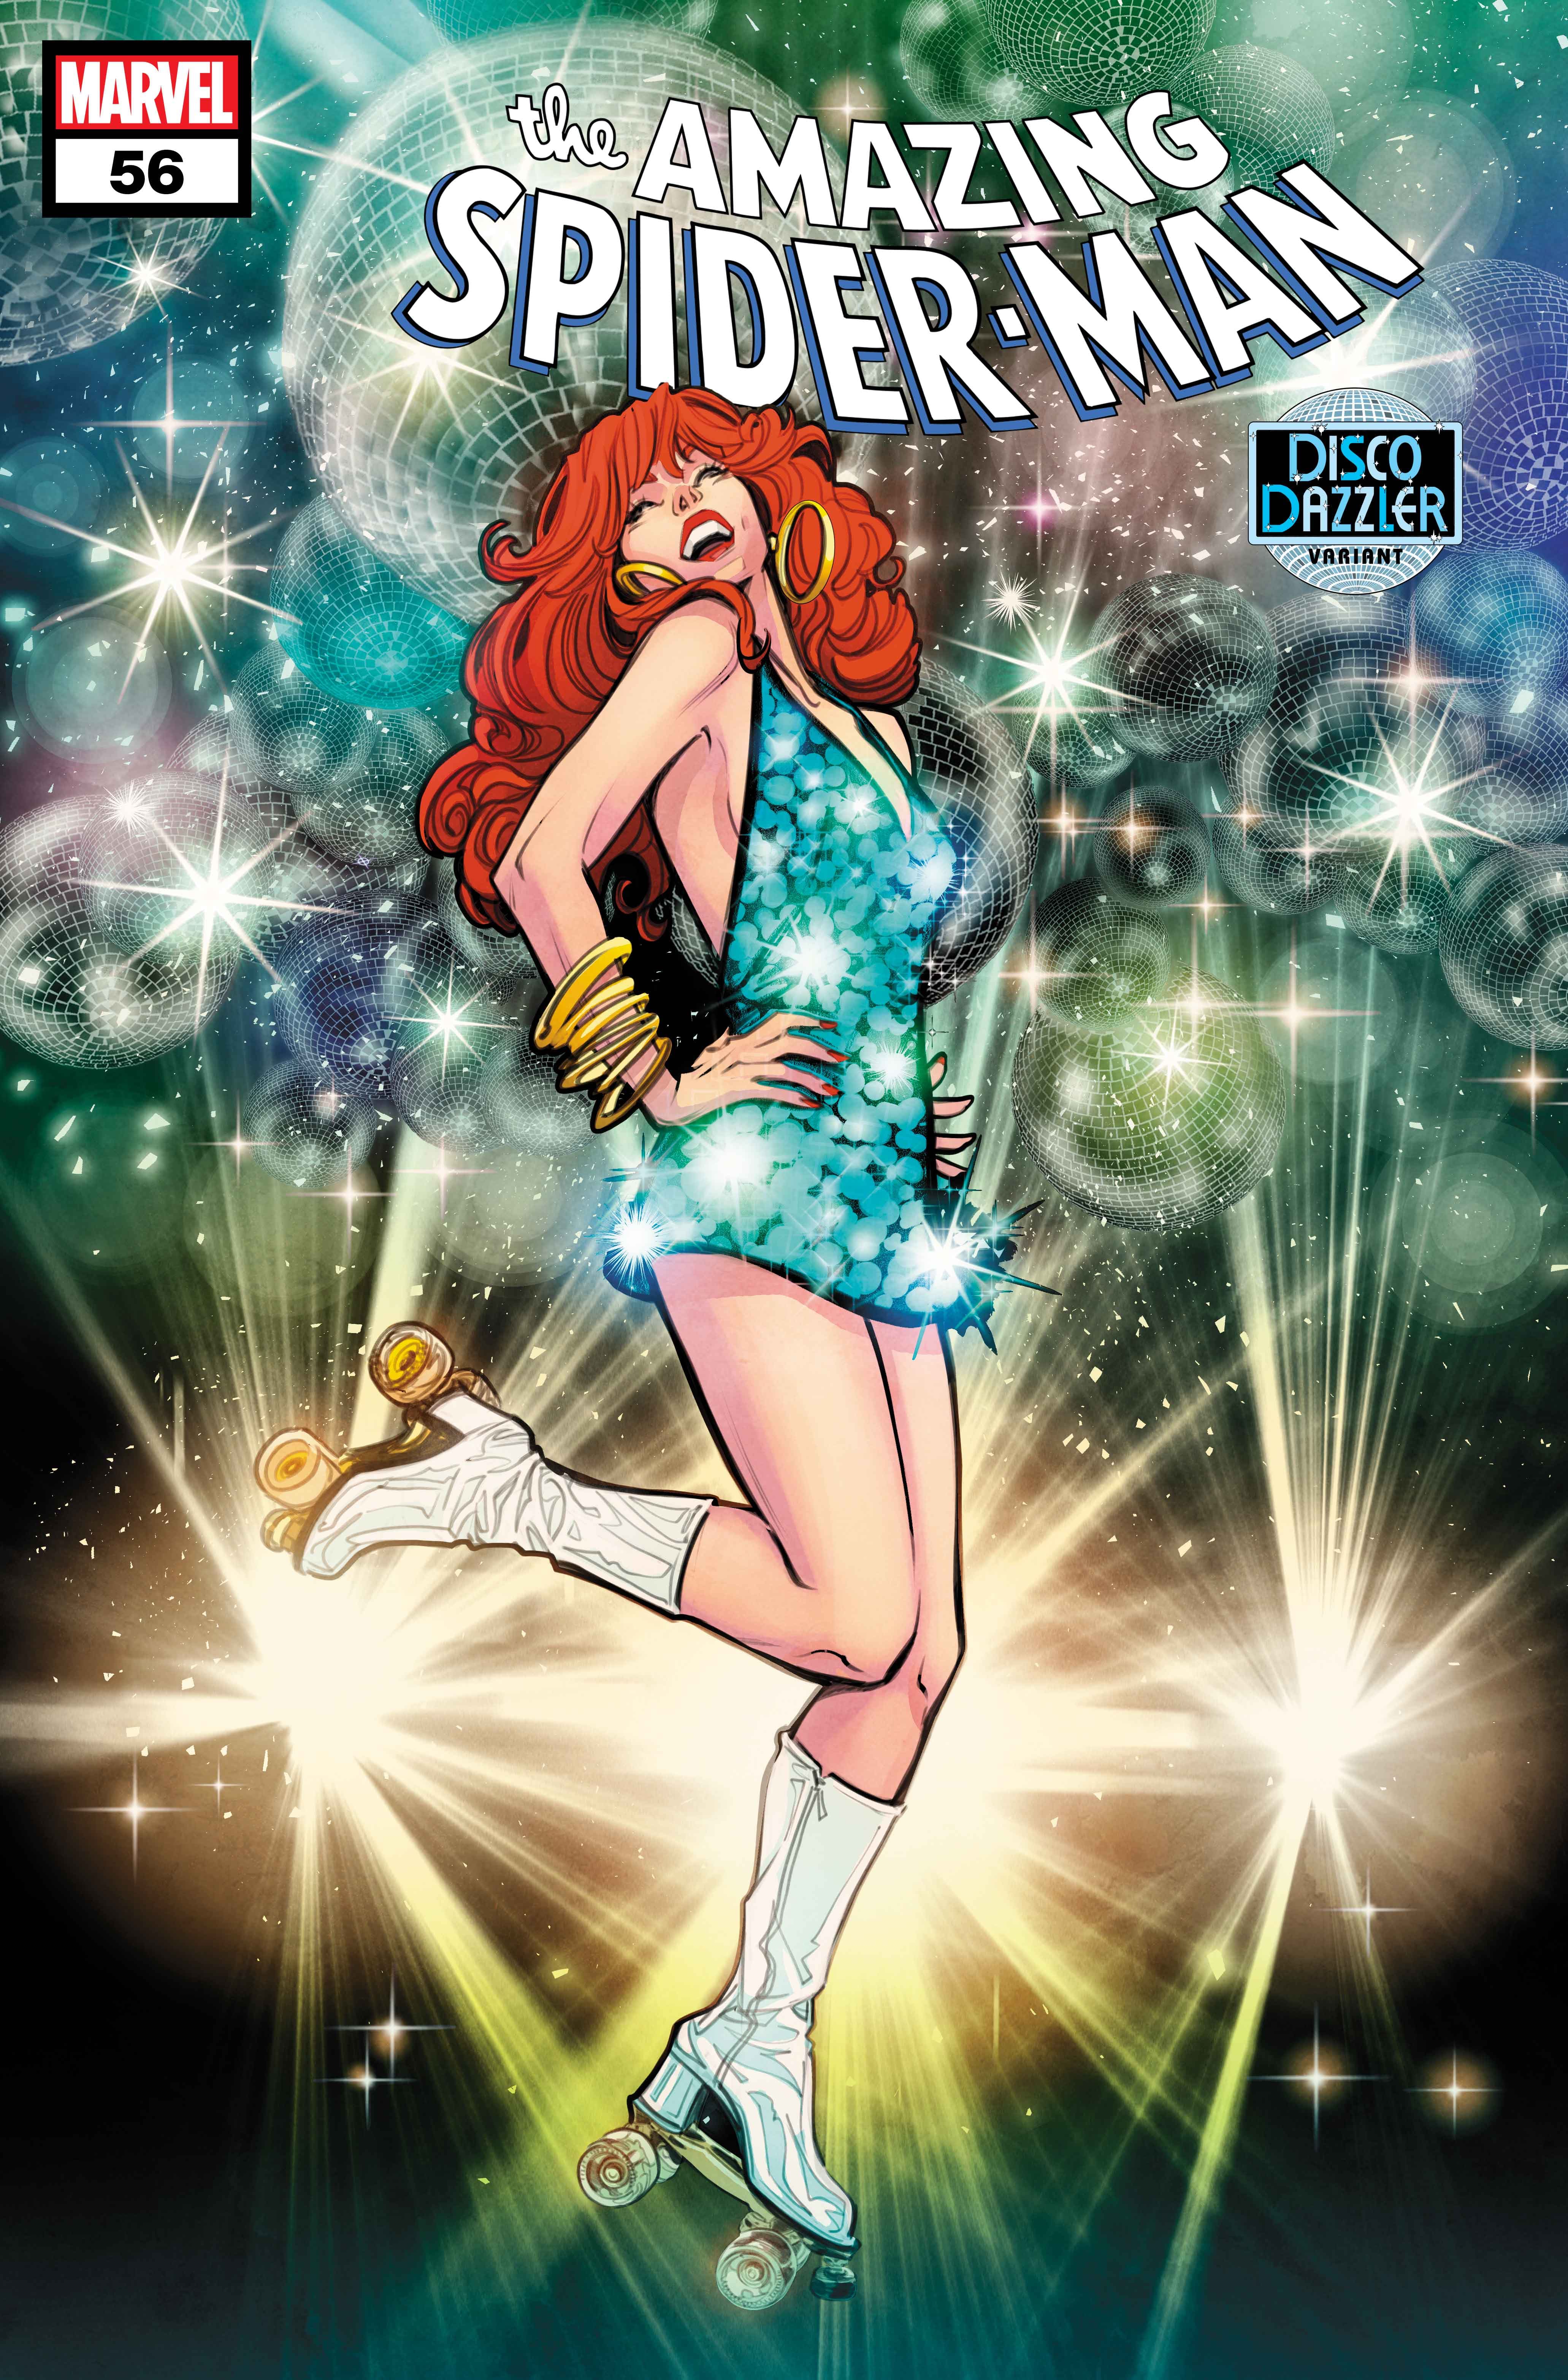 CRISTAL: Marvel celebra a discoteca em capas variantes